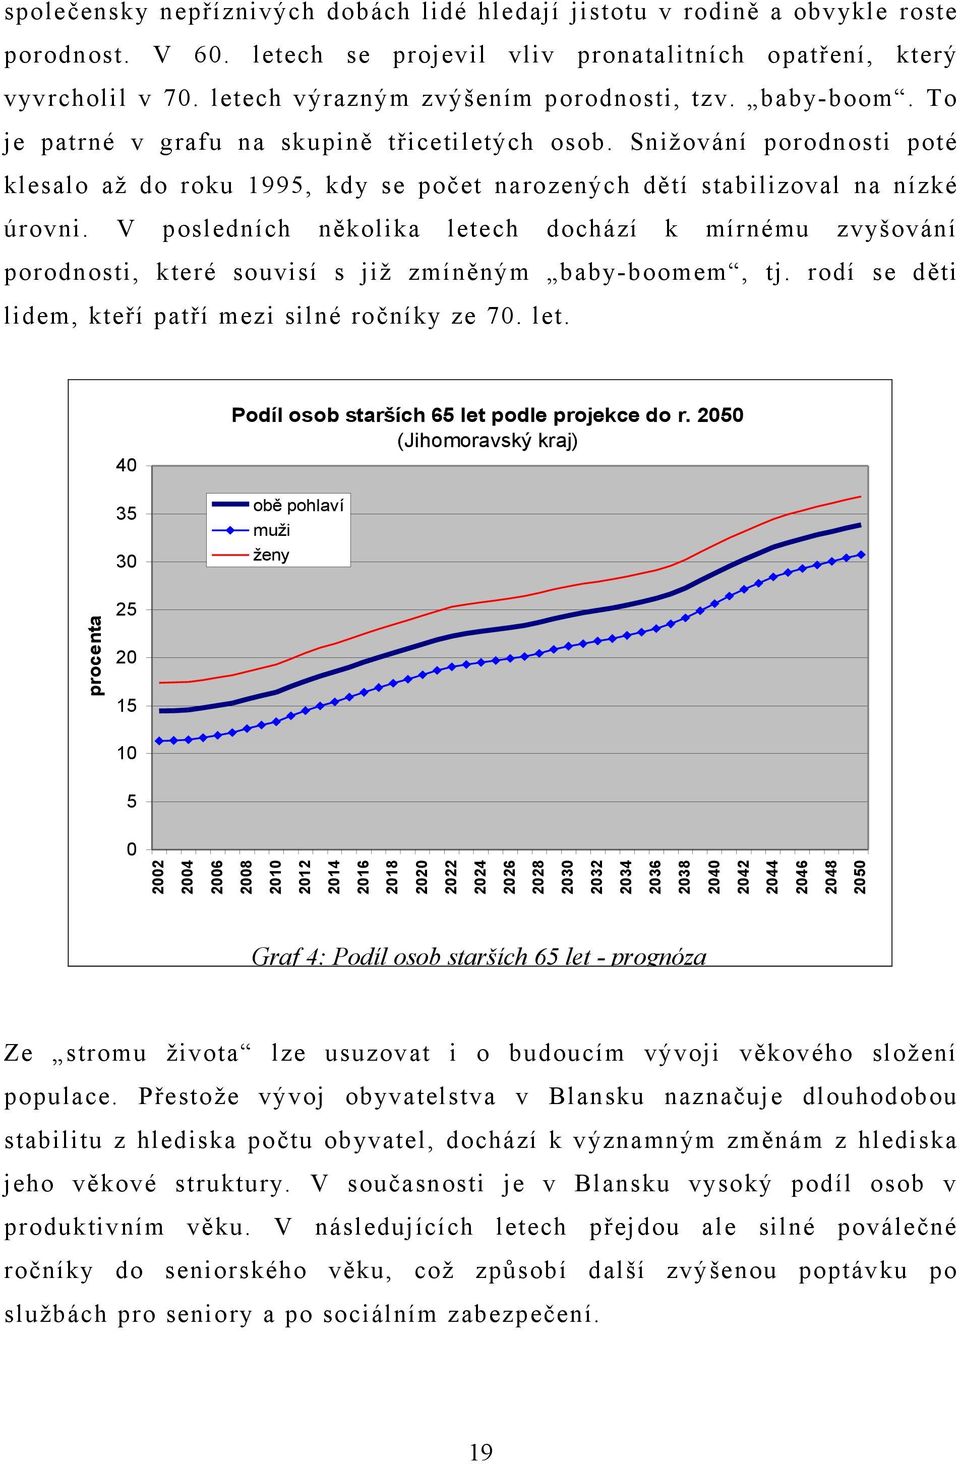 Snižování porodnosti poté klesalo až do roku 1995, kdy se počet narozených dětí stabilizoval na nízké úrovni.